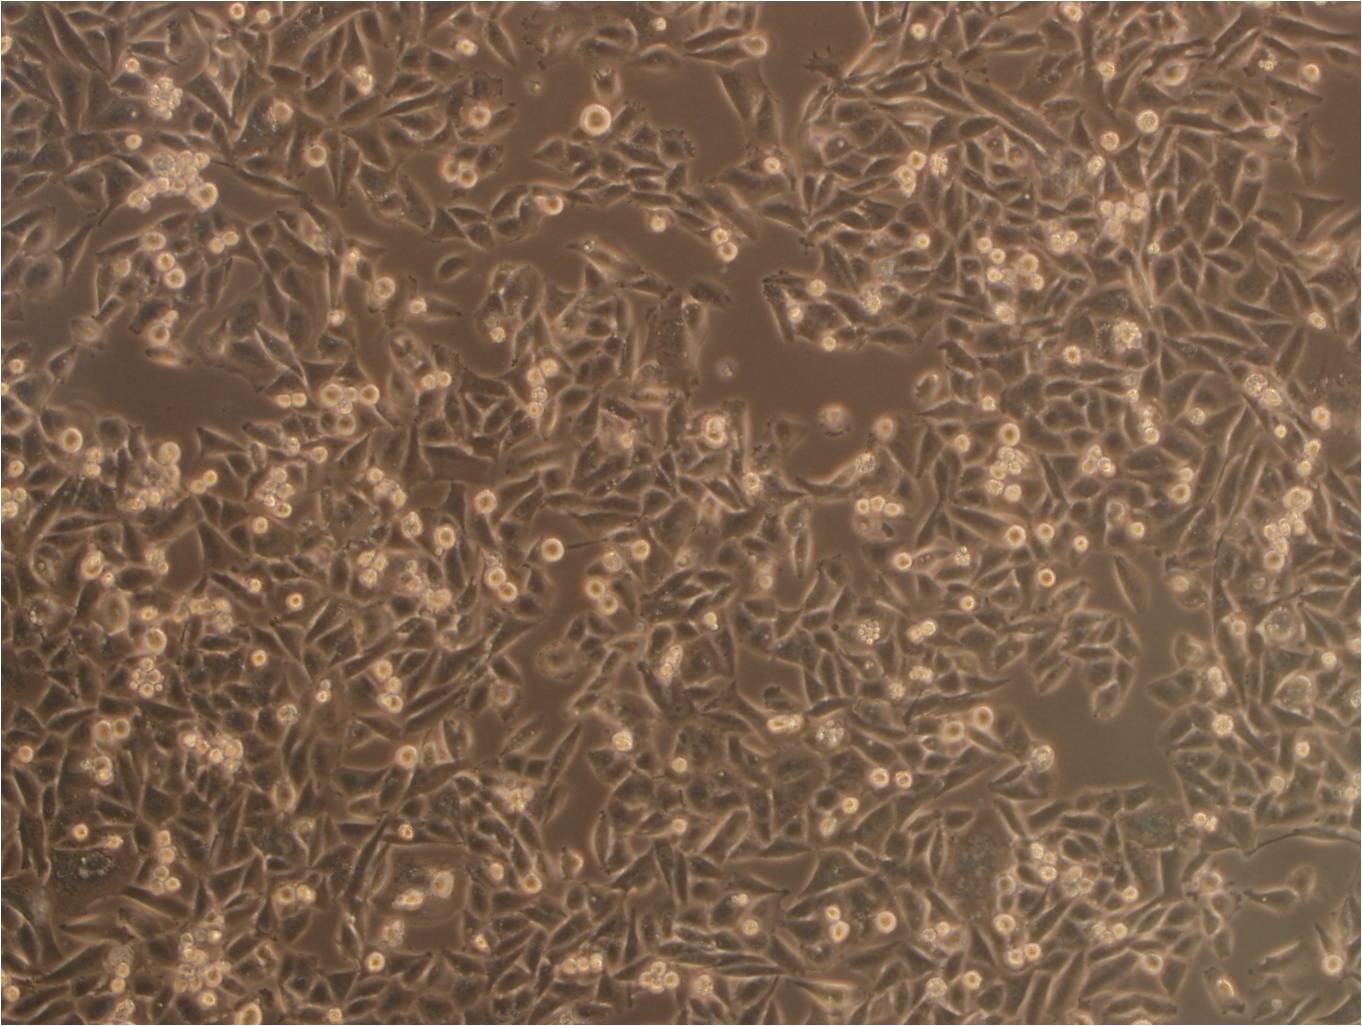 UMR-106 Cells|大鼠骨肉瘤细胞系